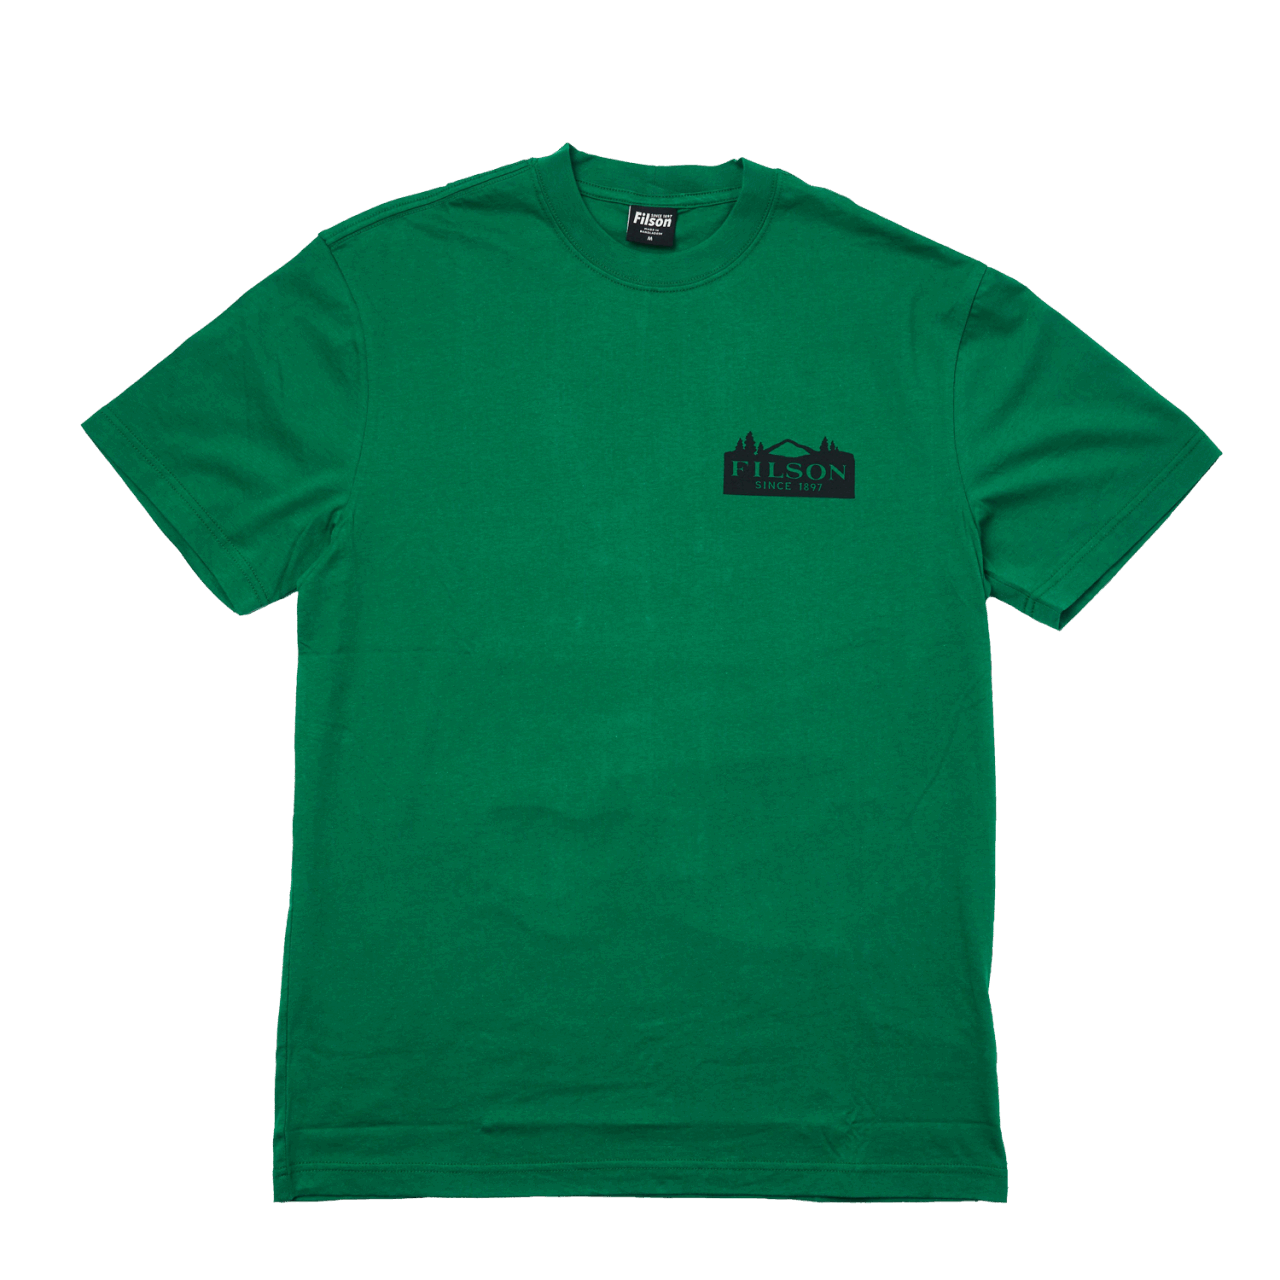 Filson Ranger Graphic T-Shirt - green